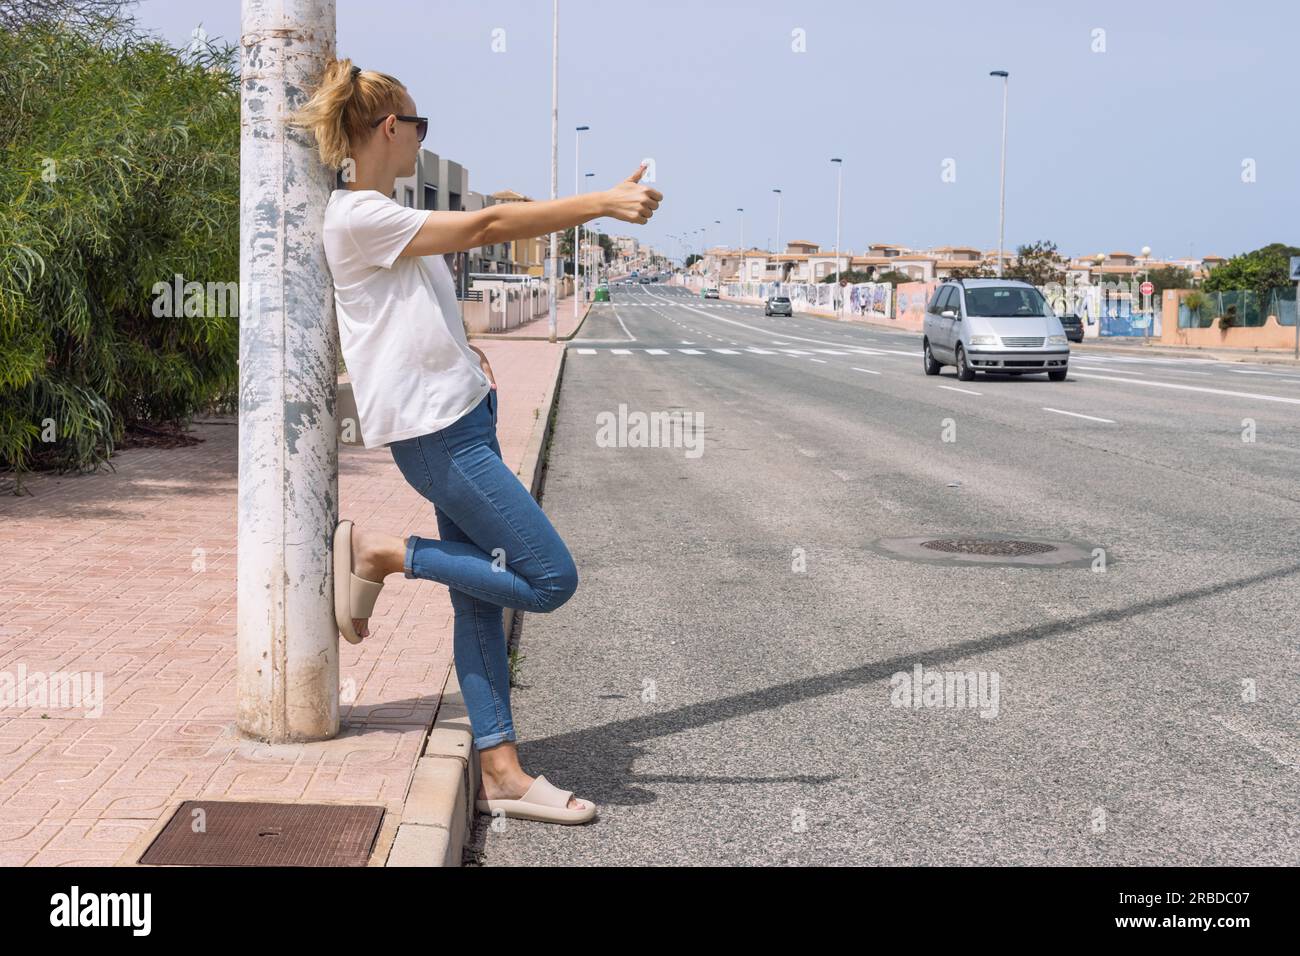 La giovane donna prende un'auto sulla strada, arresto automatico, frenata automatica, viaggio, viaggio. Foto di alta qualità Foto Stock